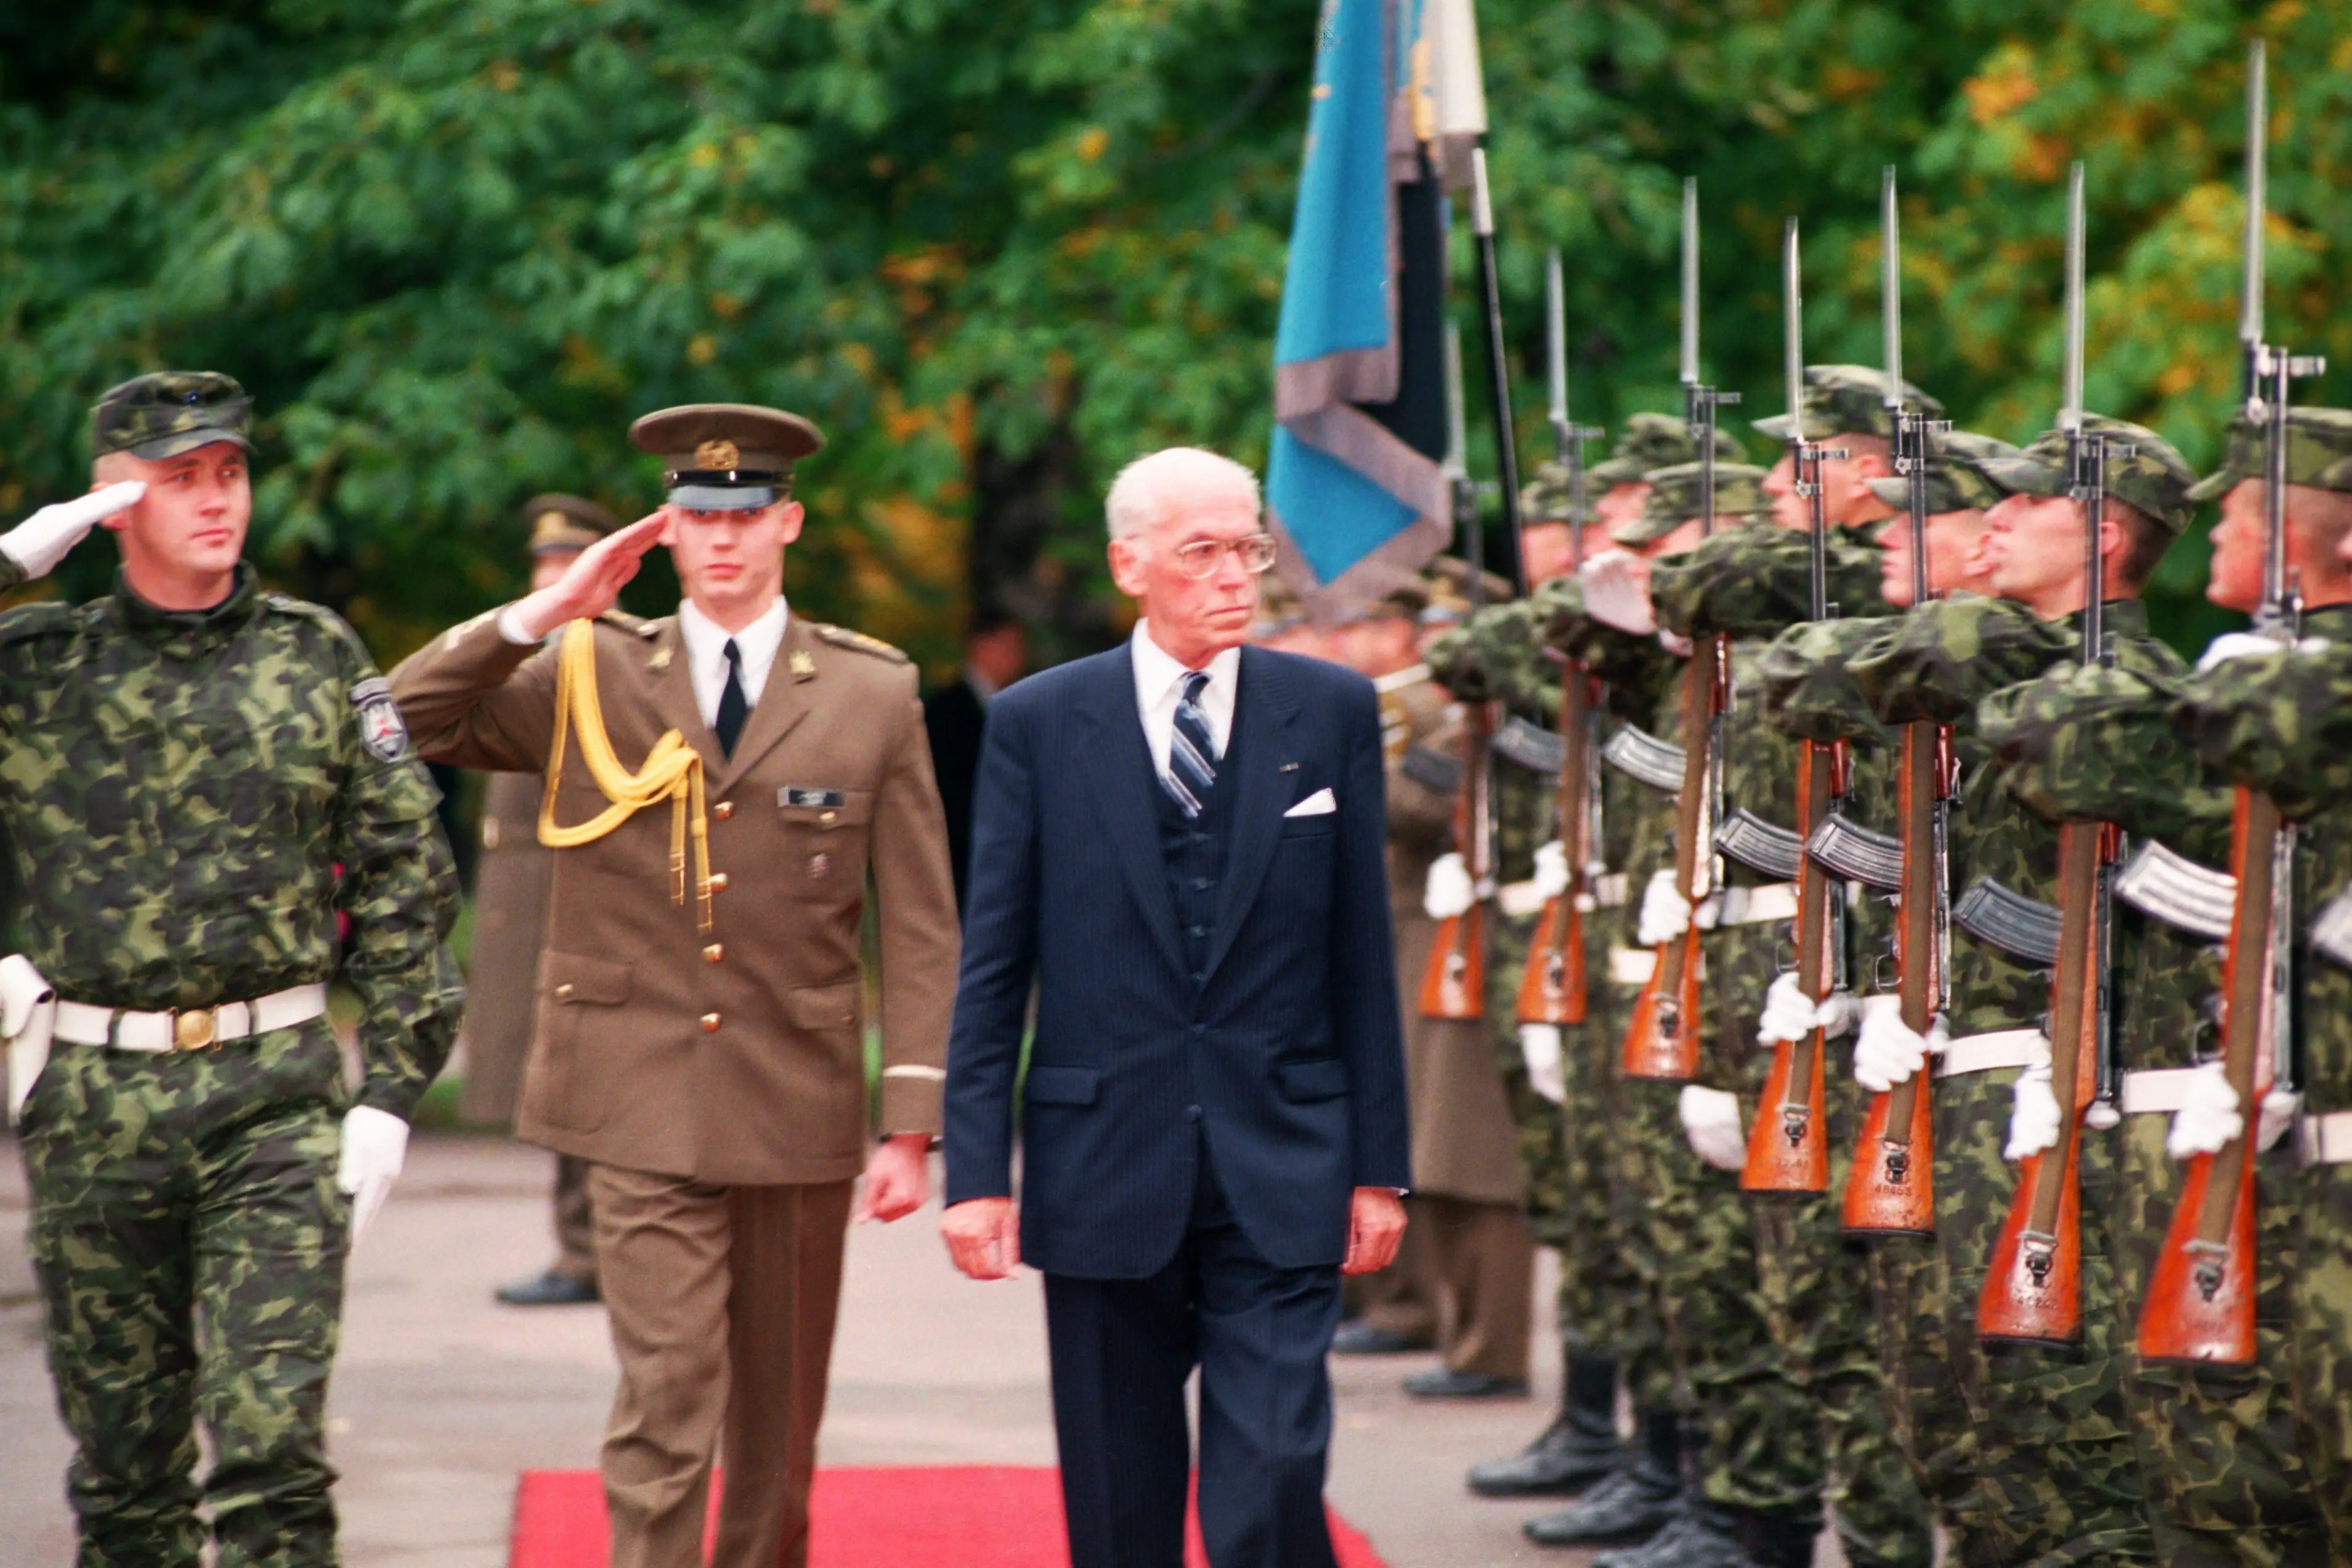 Auvahtkond Kadriorus tervitab president Lennart Merit pärast ametivande andmist Riigikogus, 1996